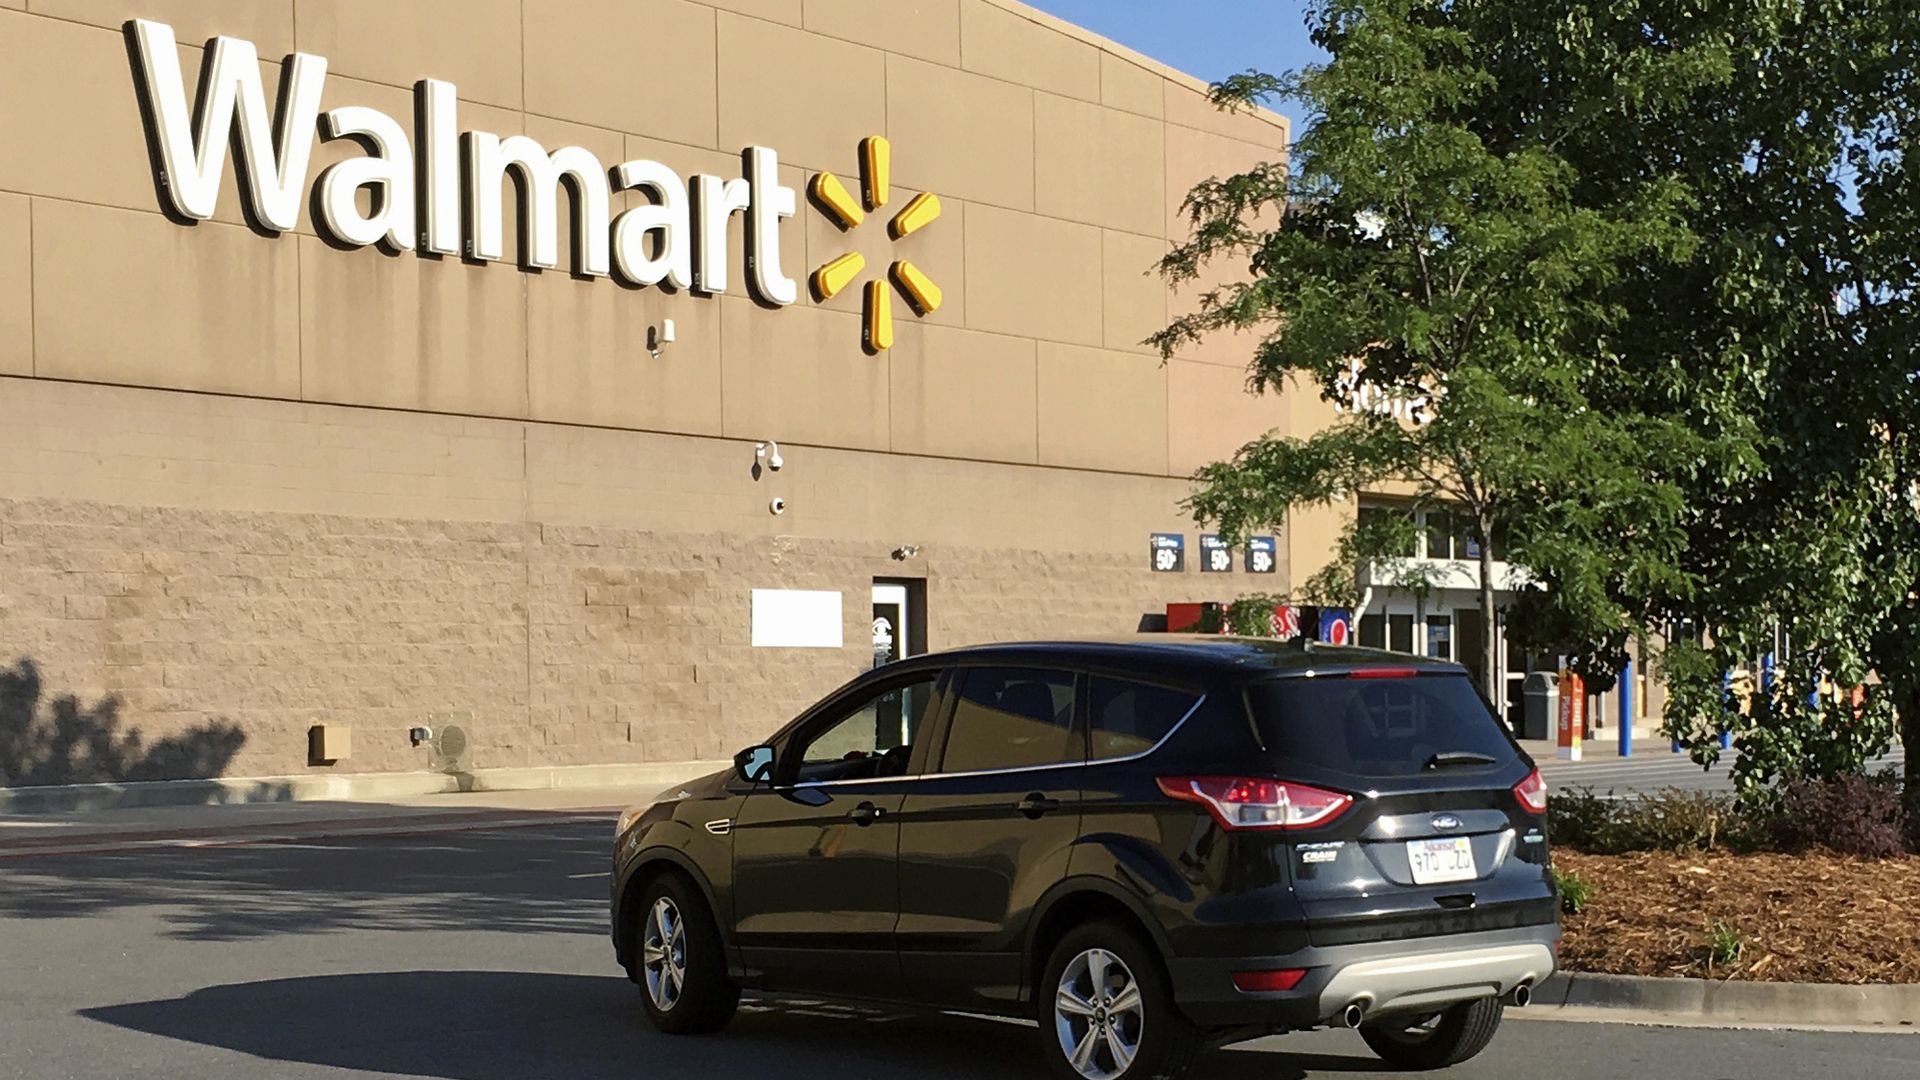 A motorist drives through a Walmart parking lot.